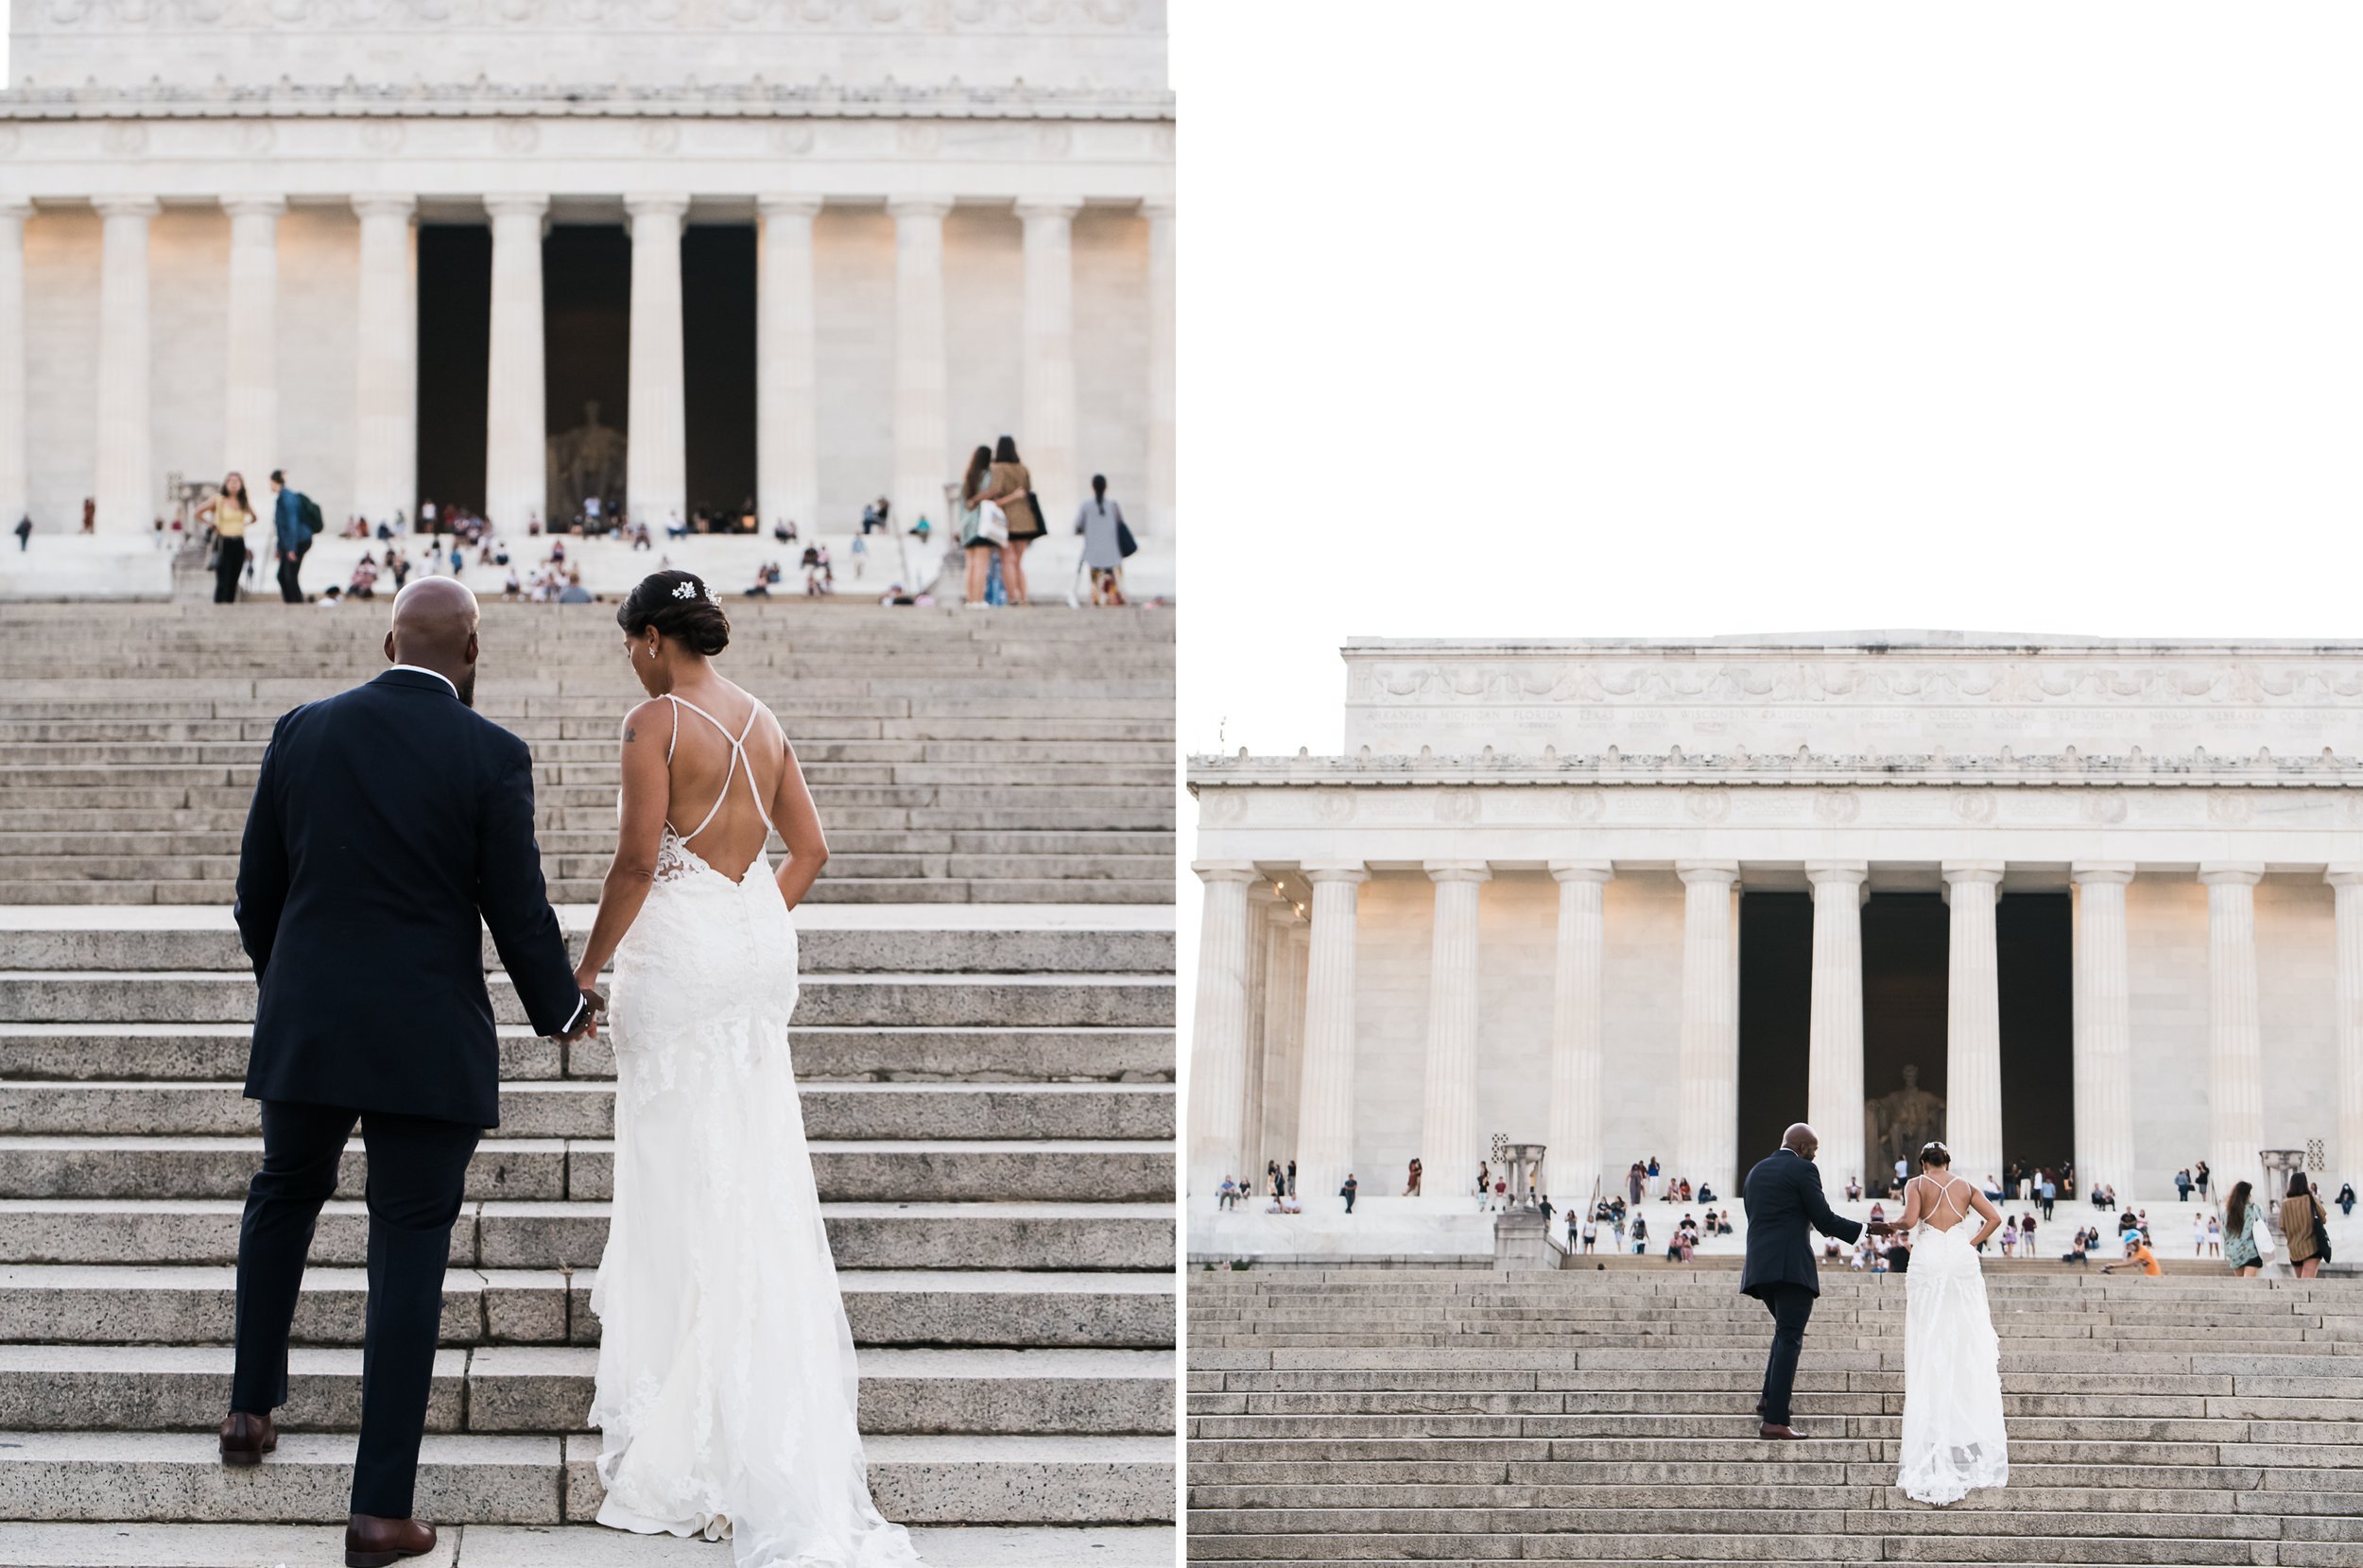  Lincoln memorial wedding photo 